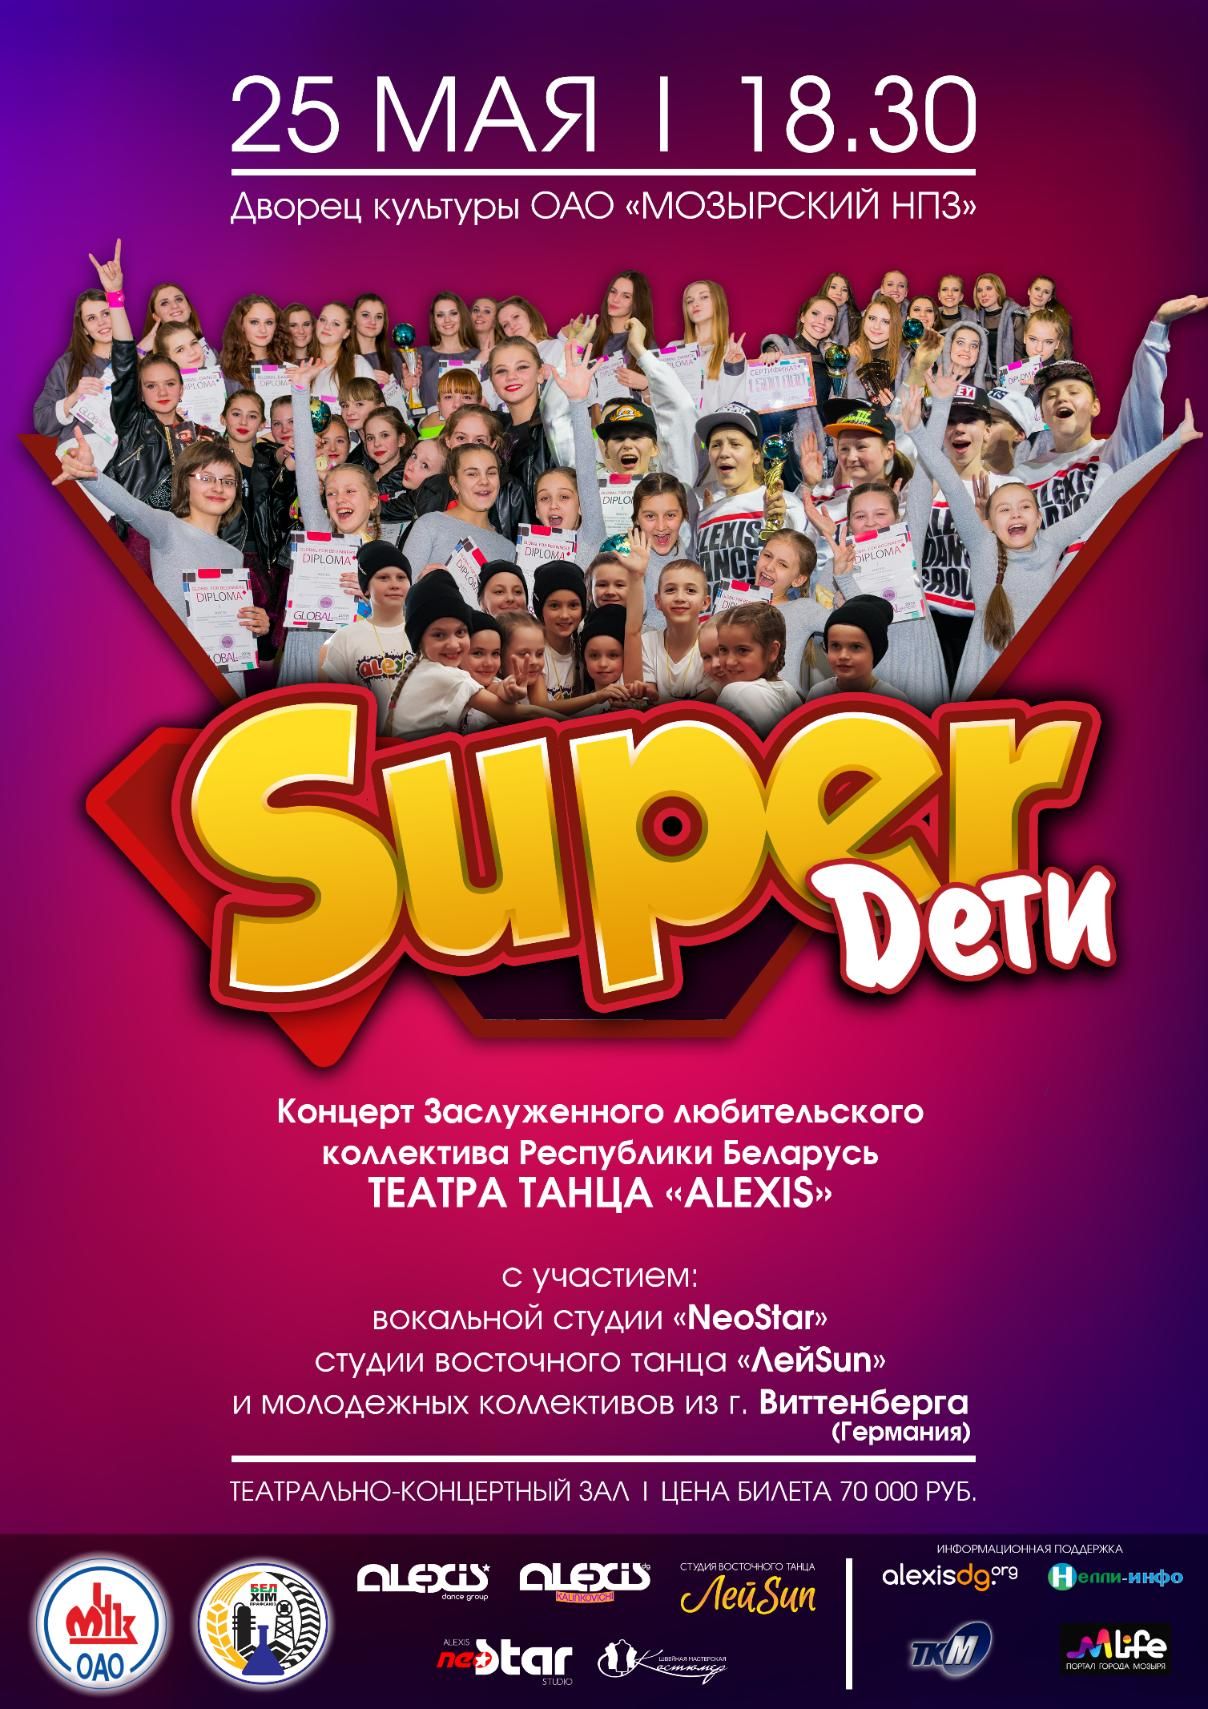  "SUPER D" - ALEXIS DANCE GROUP